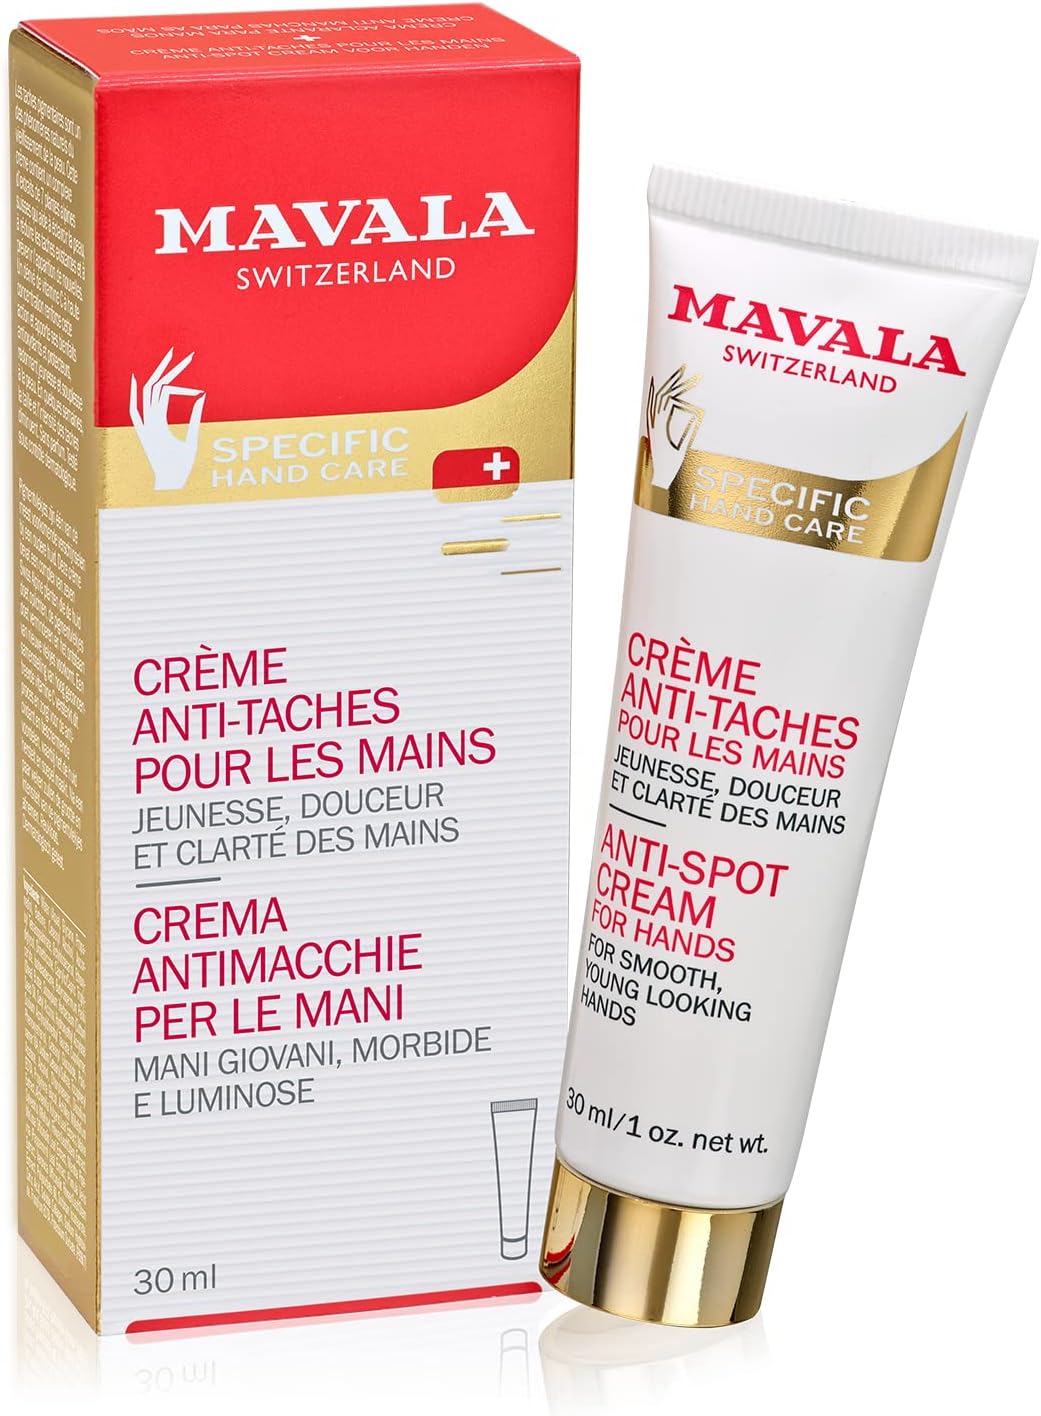 MAVALA Crema de Manos Hand Cream Tube Trial 30ml